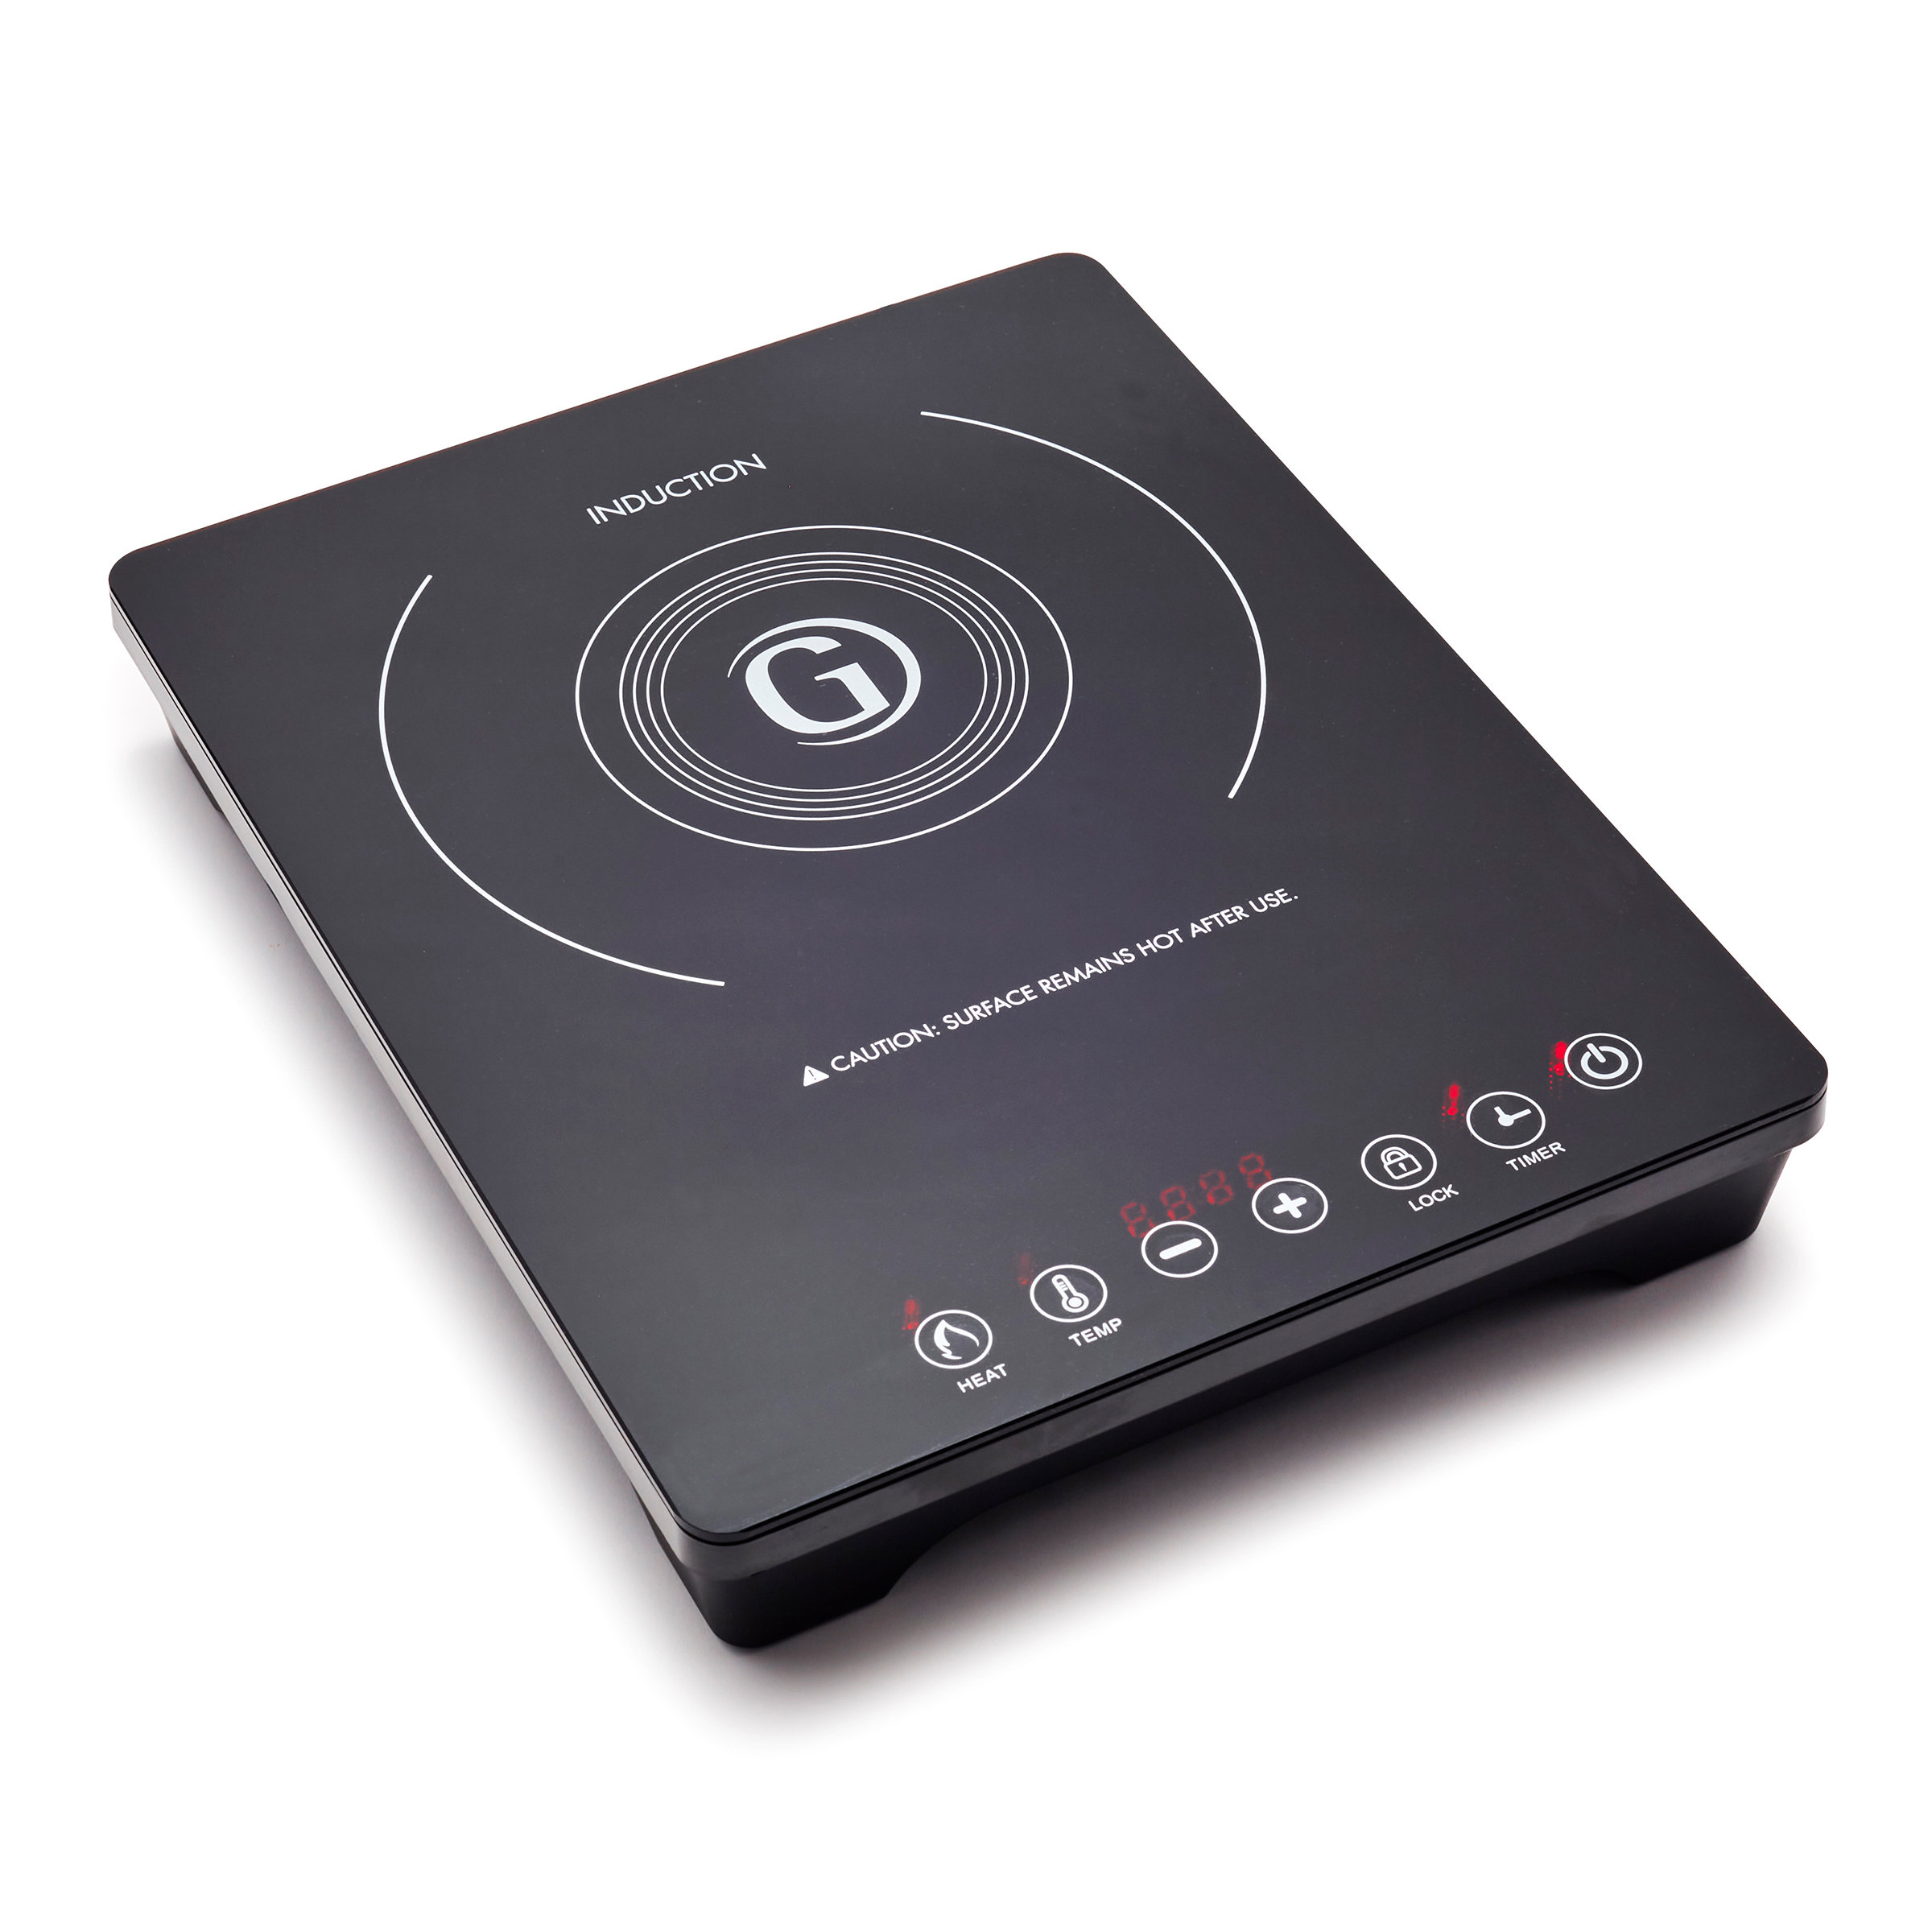 Avanti Induction Cooktop 1,800 Watt Portable Hot Plate - Black